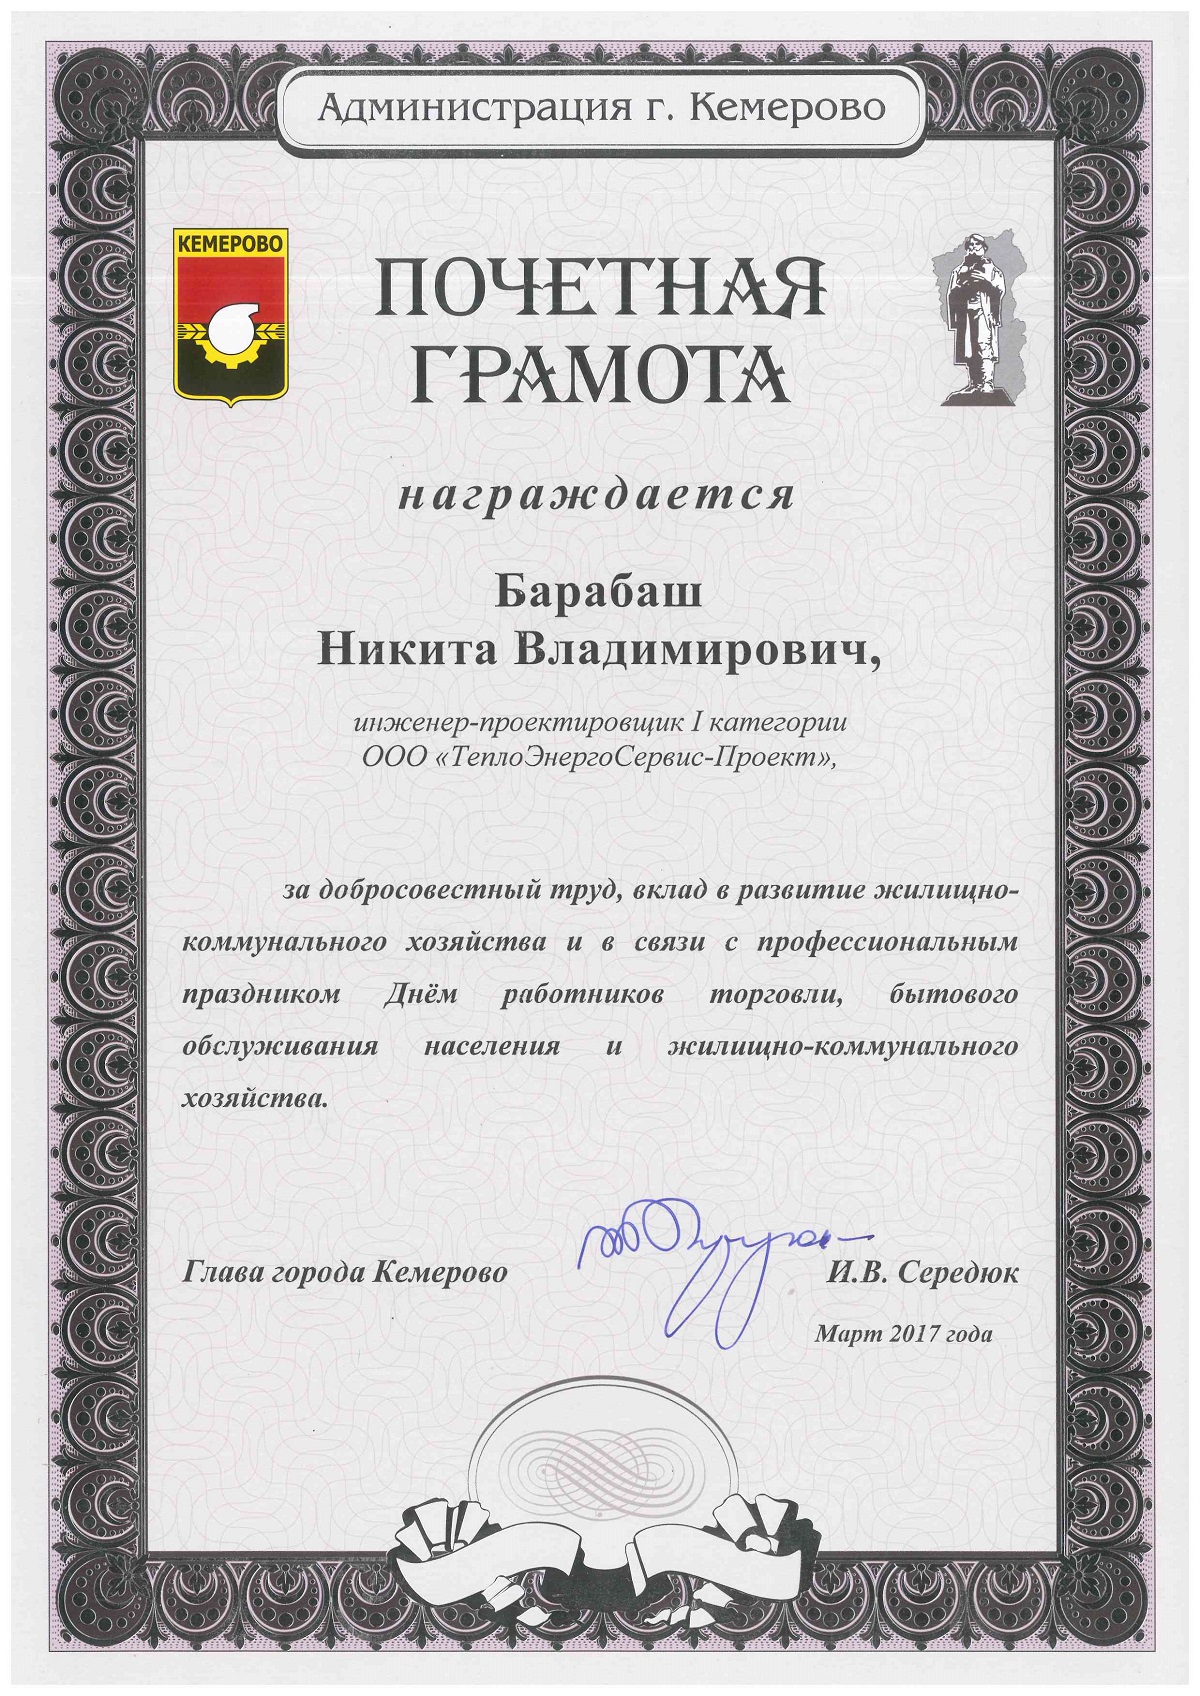 Почетная грамота Администрации г. Кемерово Барабашу Никите Владимировичу 